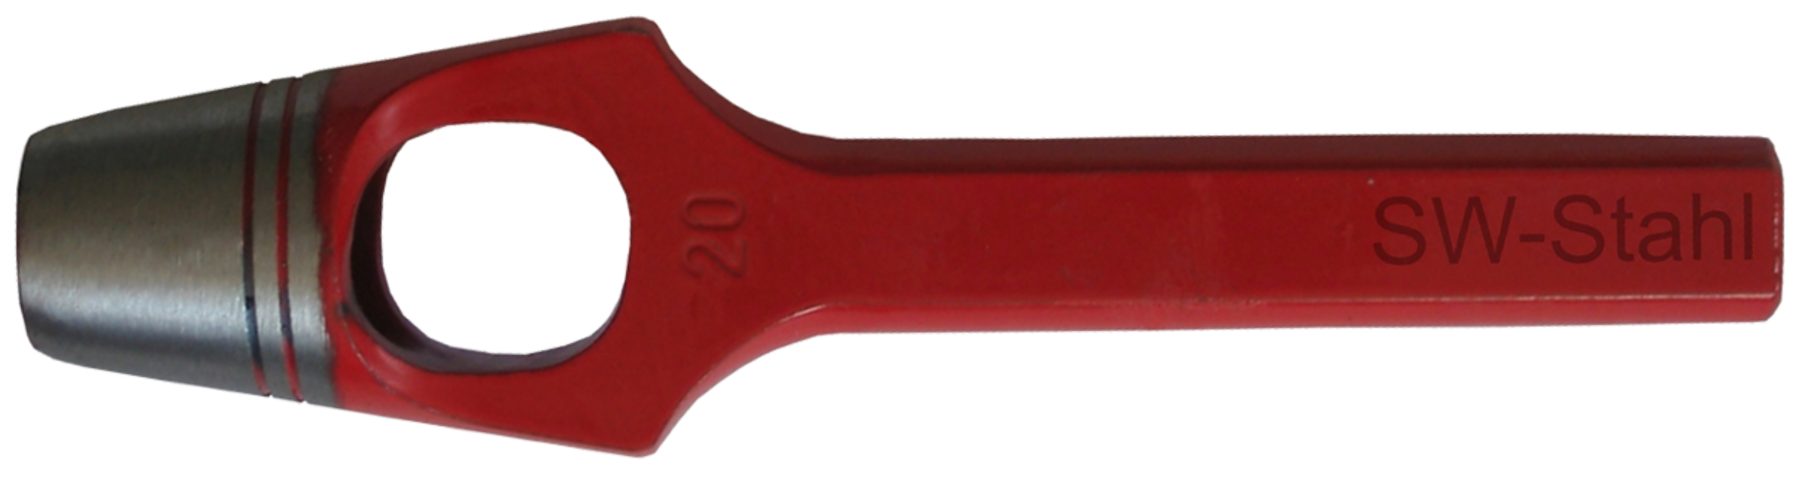 SW-STAHL Multitool 95009L Henkellocheisen ø 9 mm, rot lackiert, geschliffen